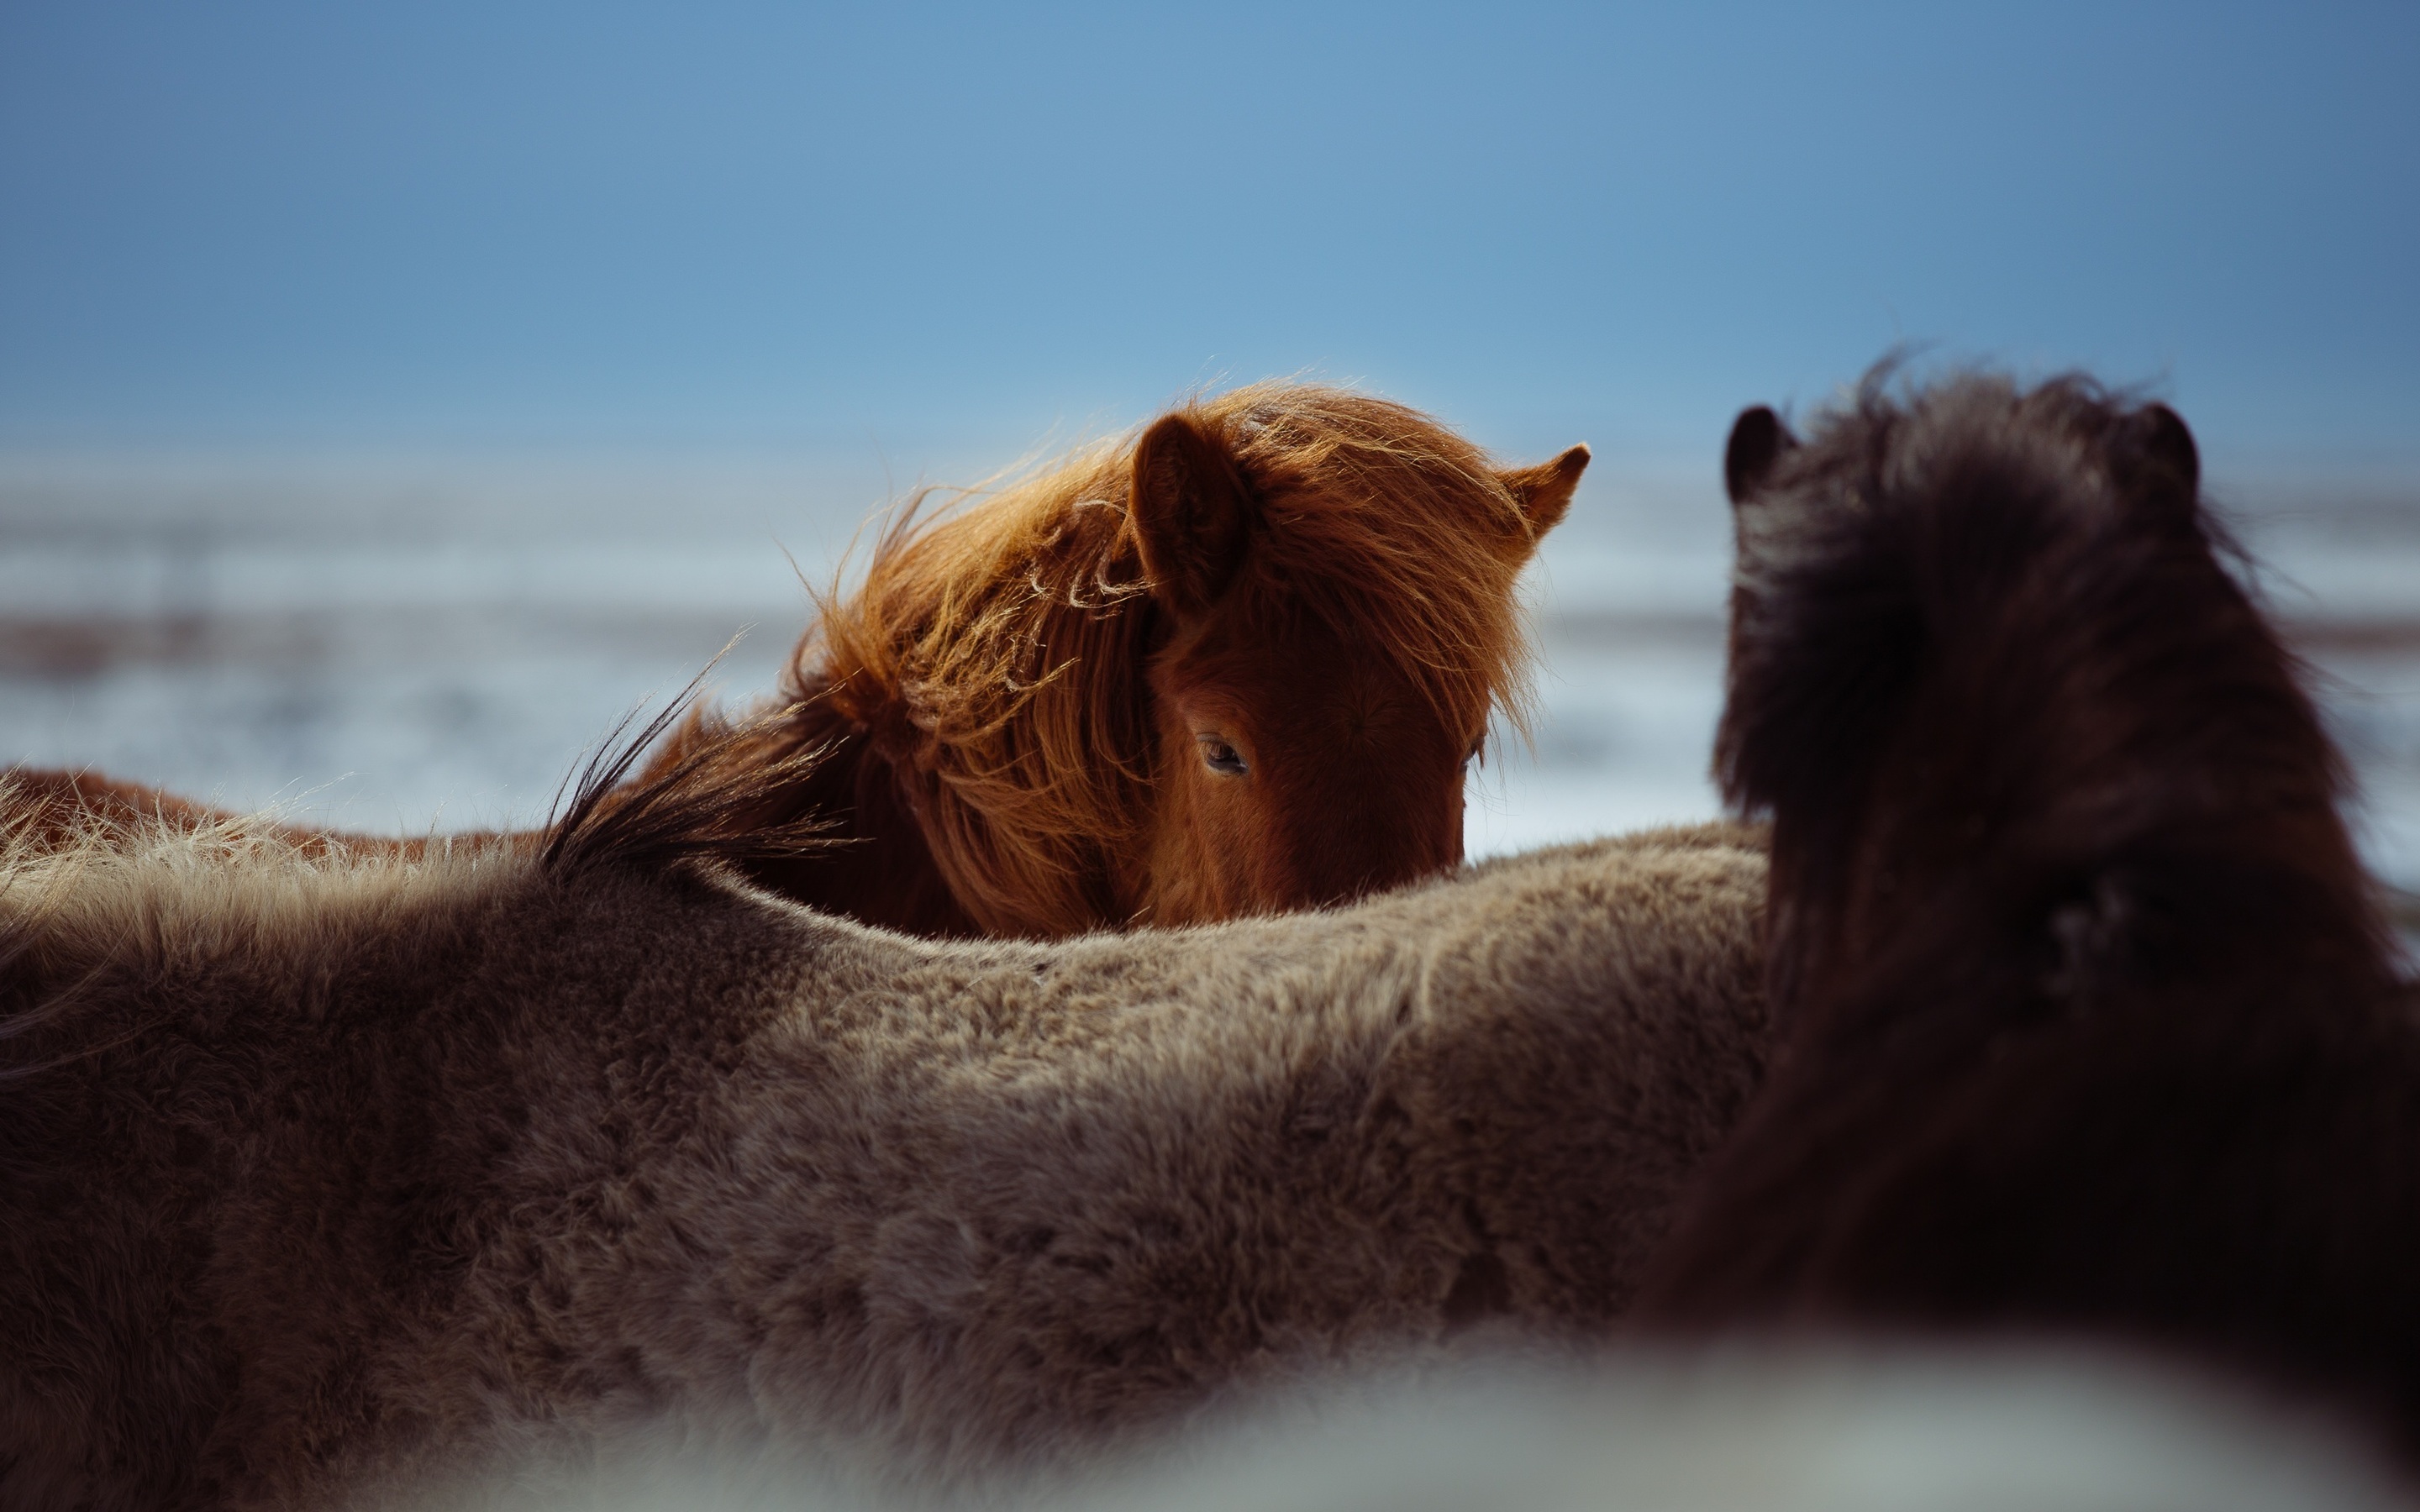 Descargar fondos de pantalla Caballo islandés, 4k, la fauna, los caballos,  el Equus ferus caballus, Islandia monitor con una resolución 2880x1800.  Imagenes de escritorio